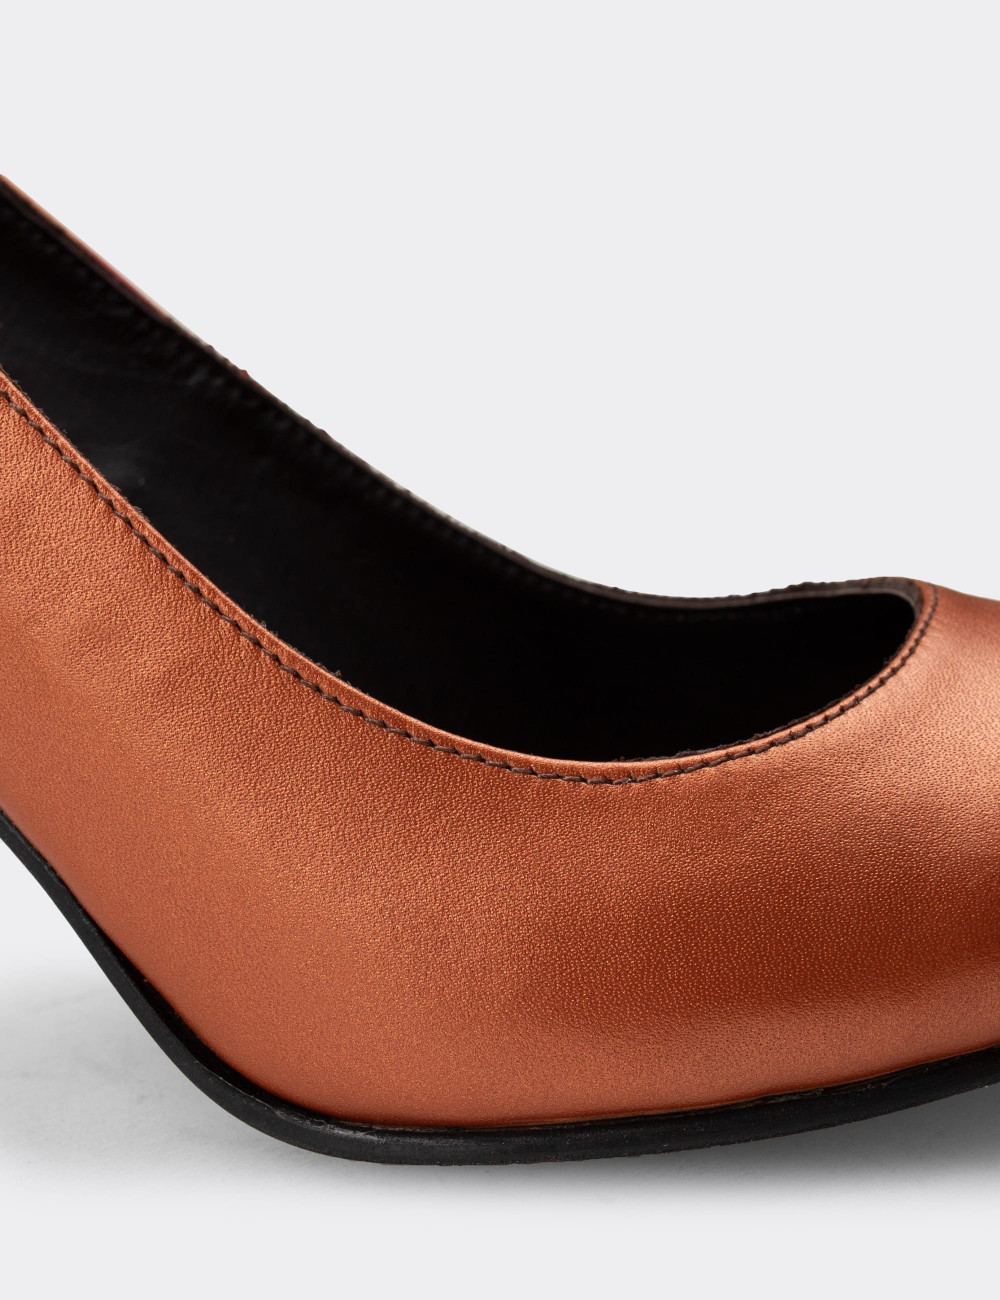 Hakiki Deri Bakır Rengi Stiletto Kadın Topuklu Ayakkabı - D2029ZBKRM01